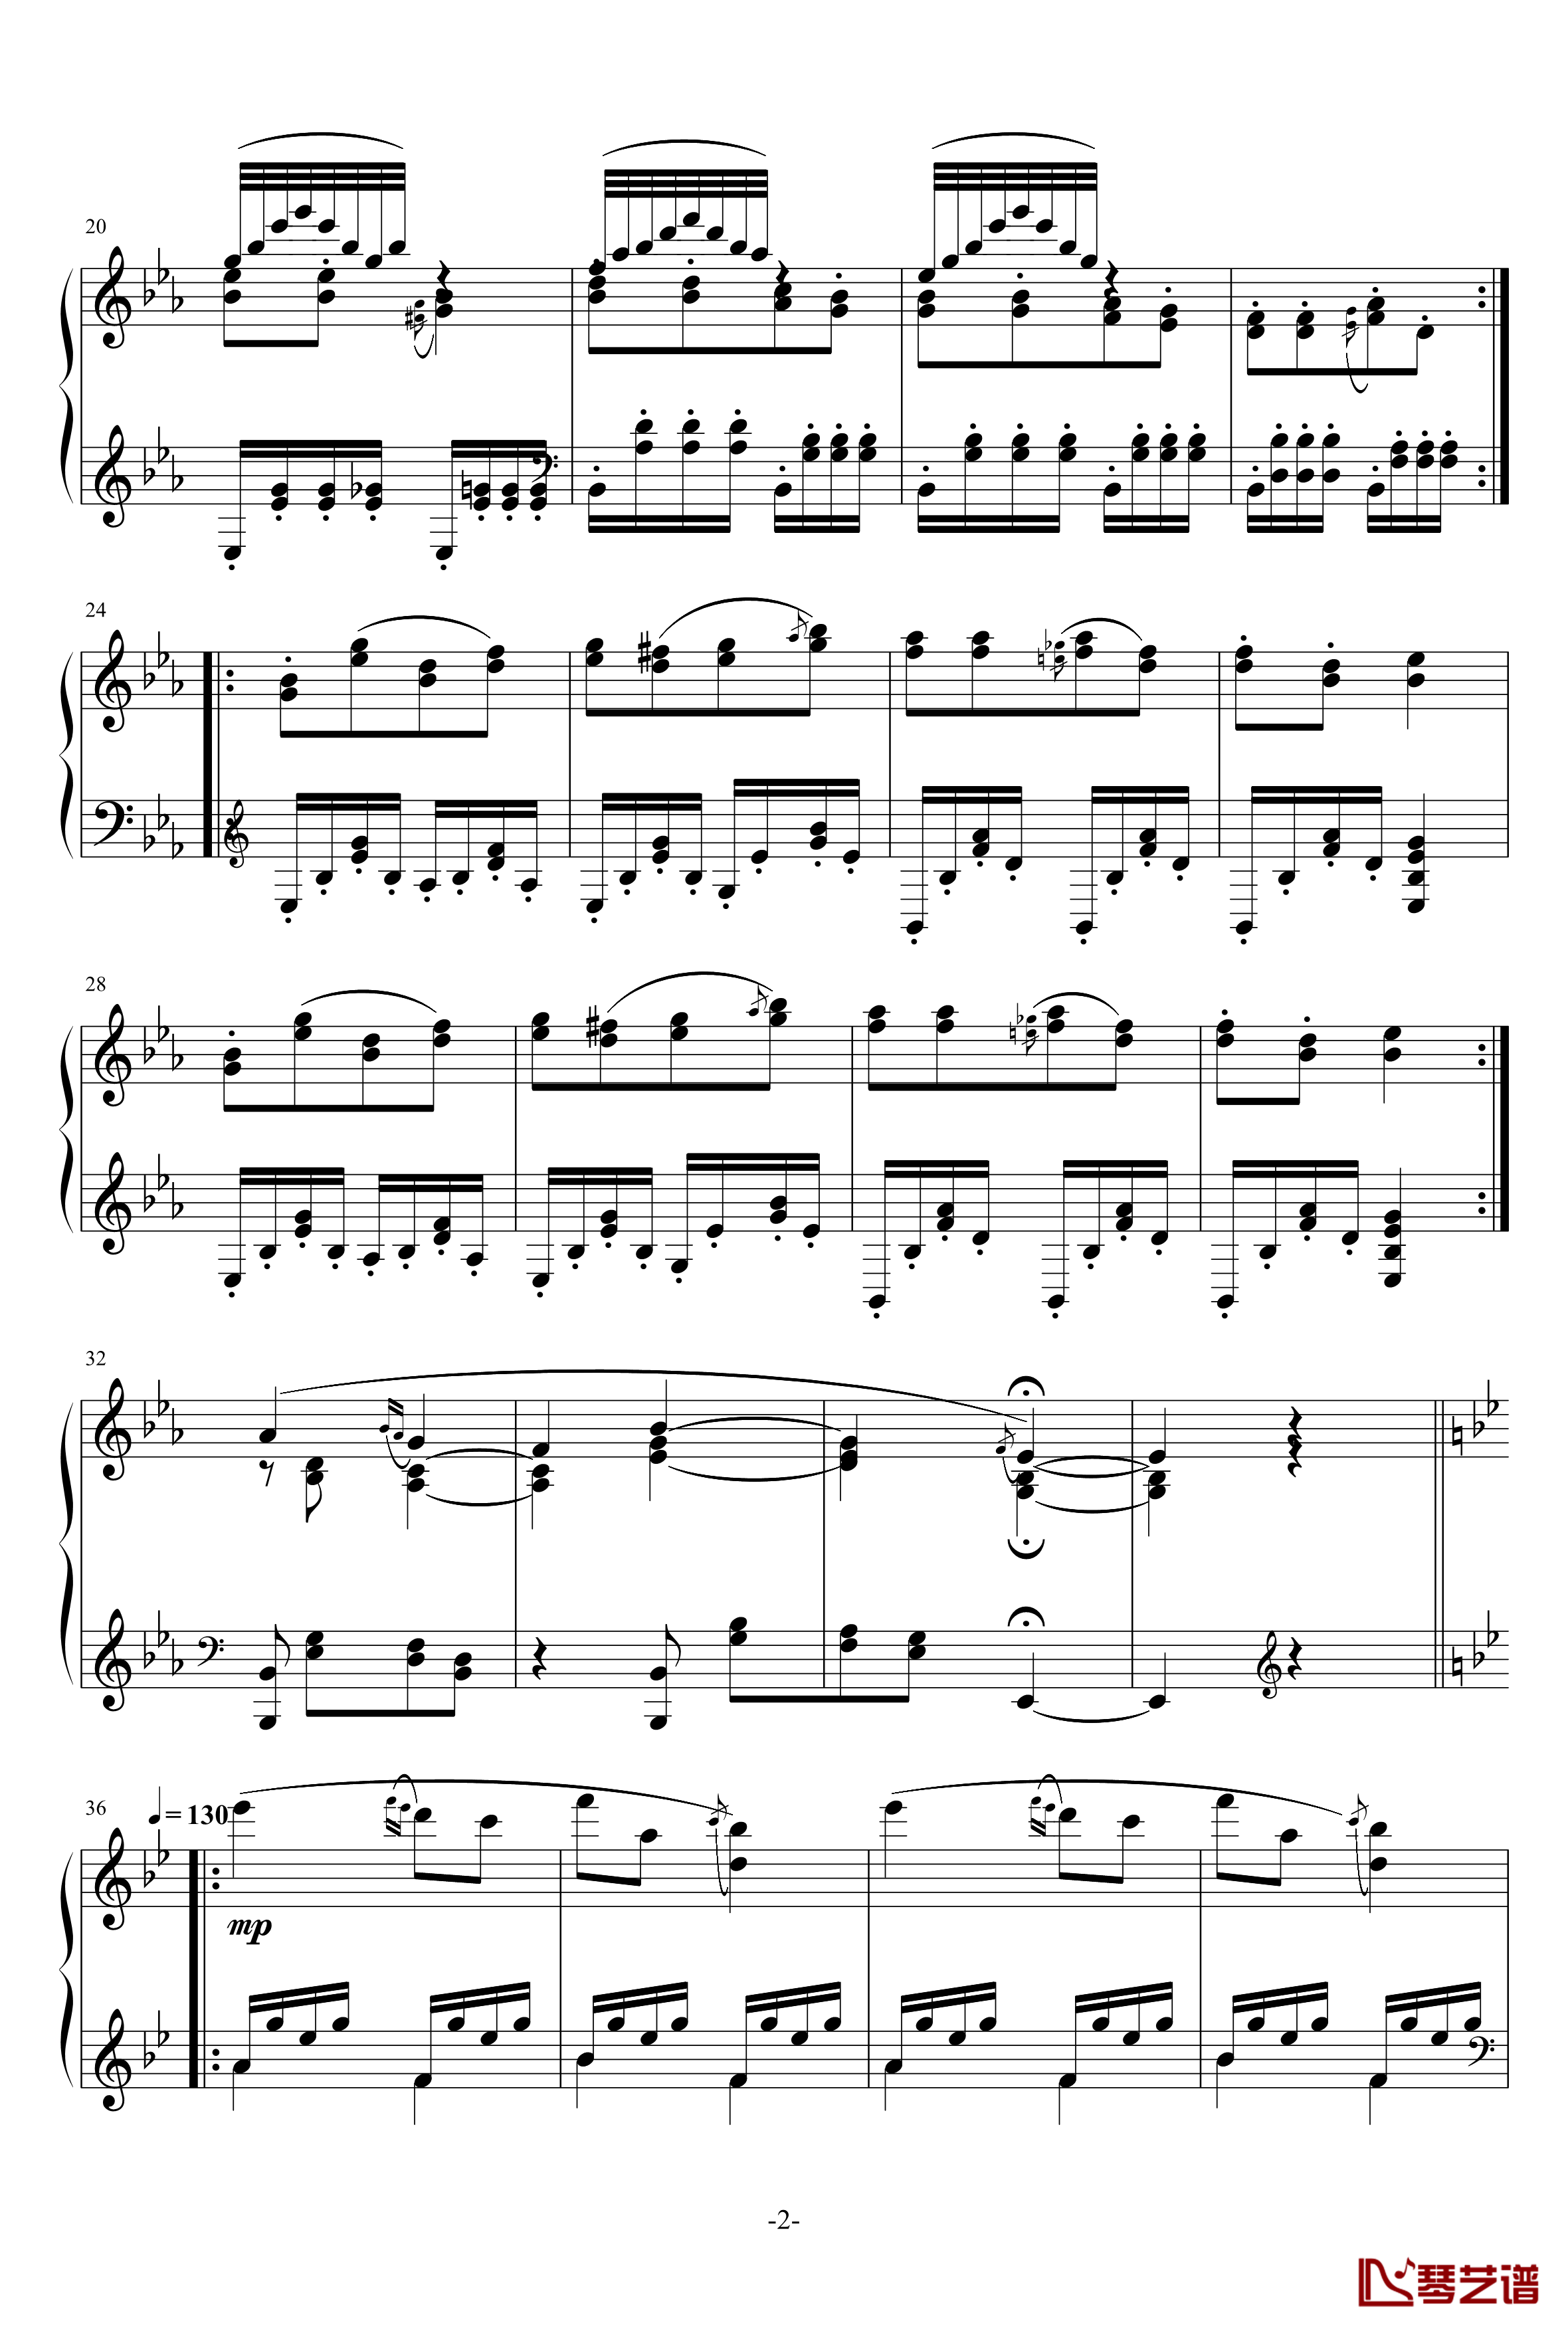 小温狂想曲 3钢琴谱—具有匈牙利狂想曲风格的一曲。—我的代表作-一个球2